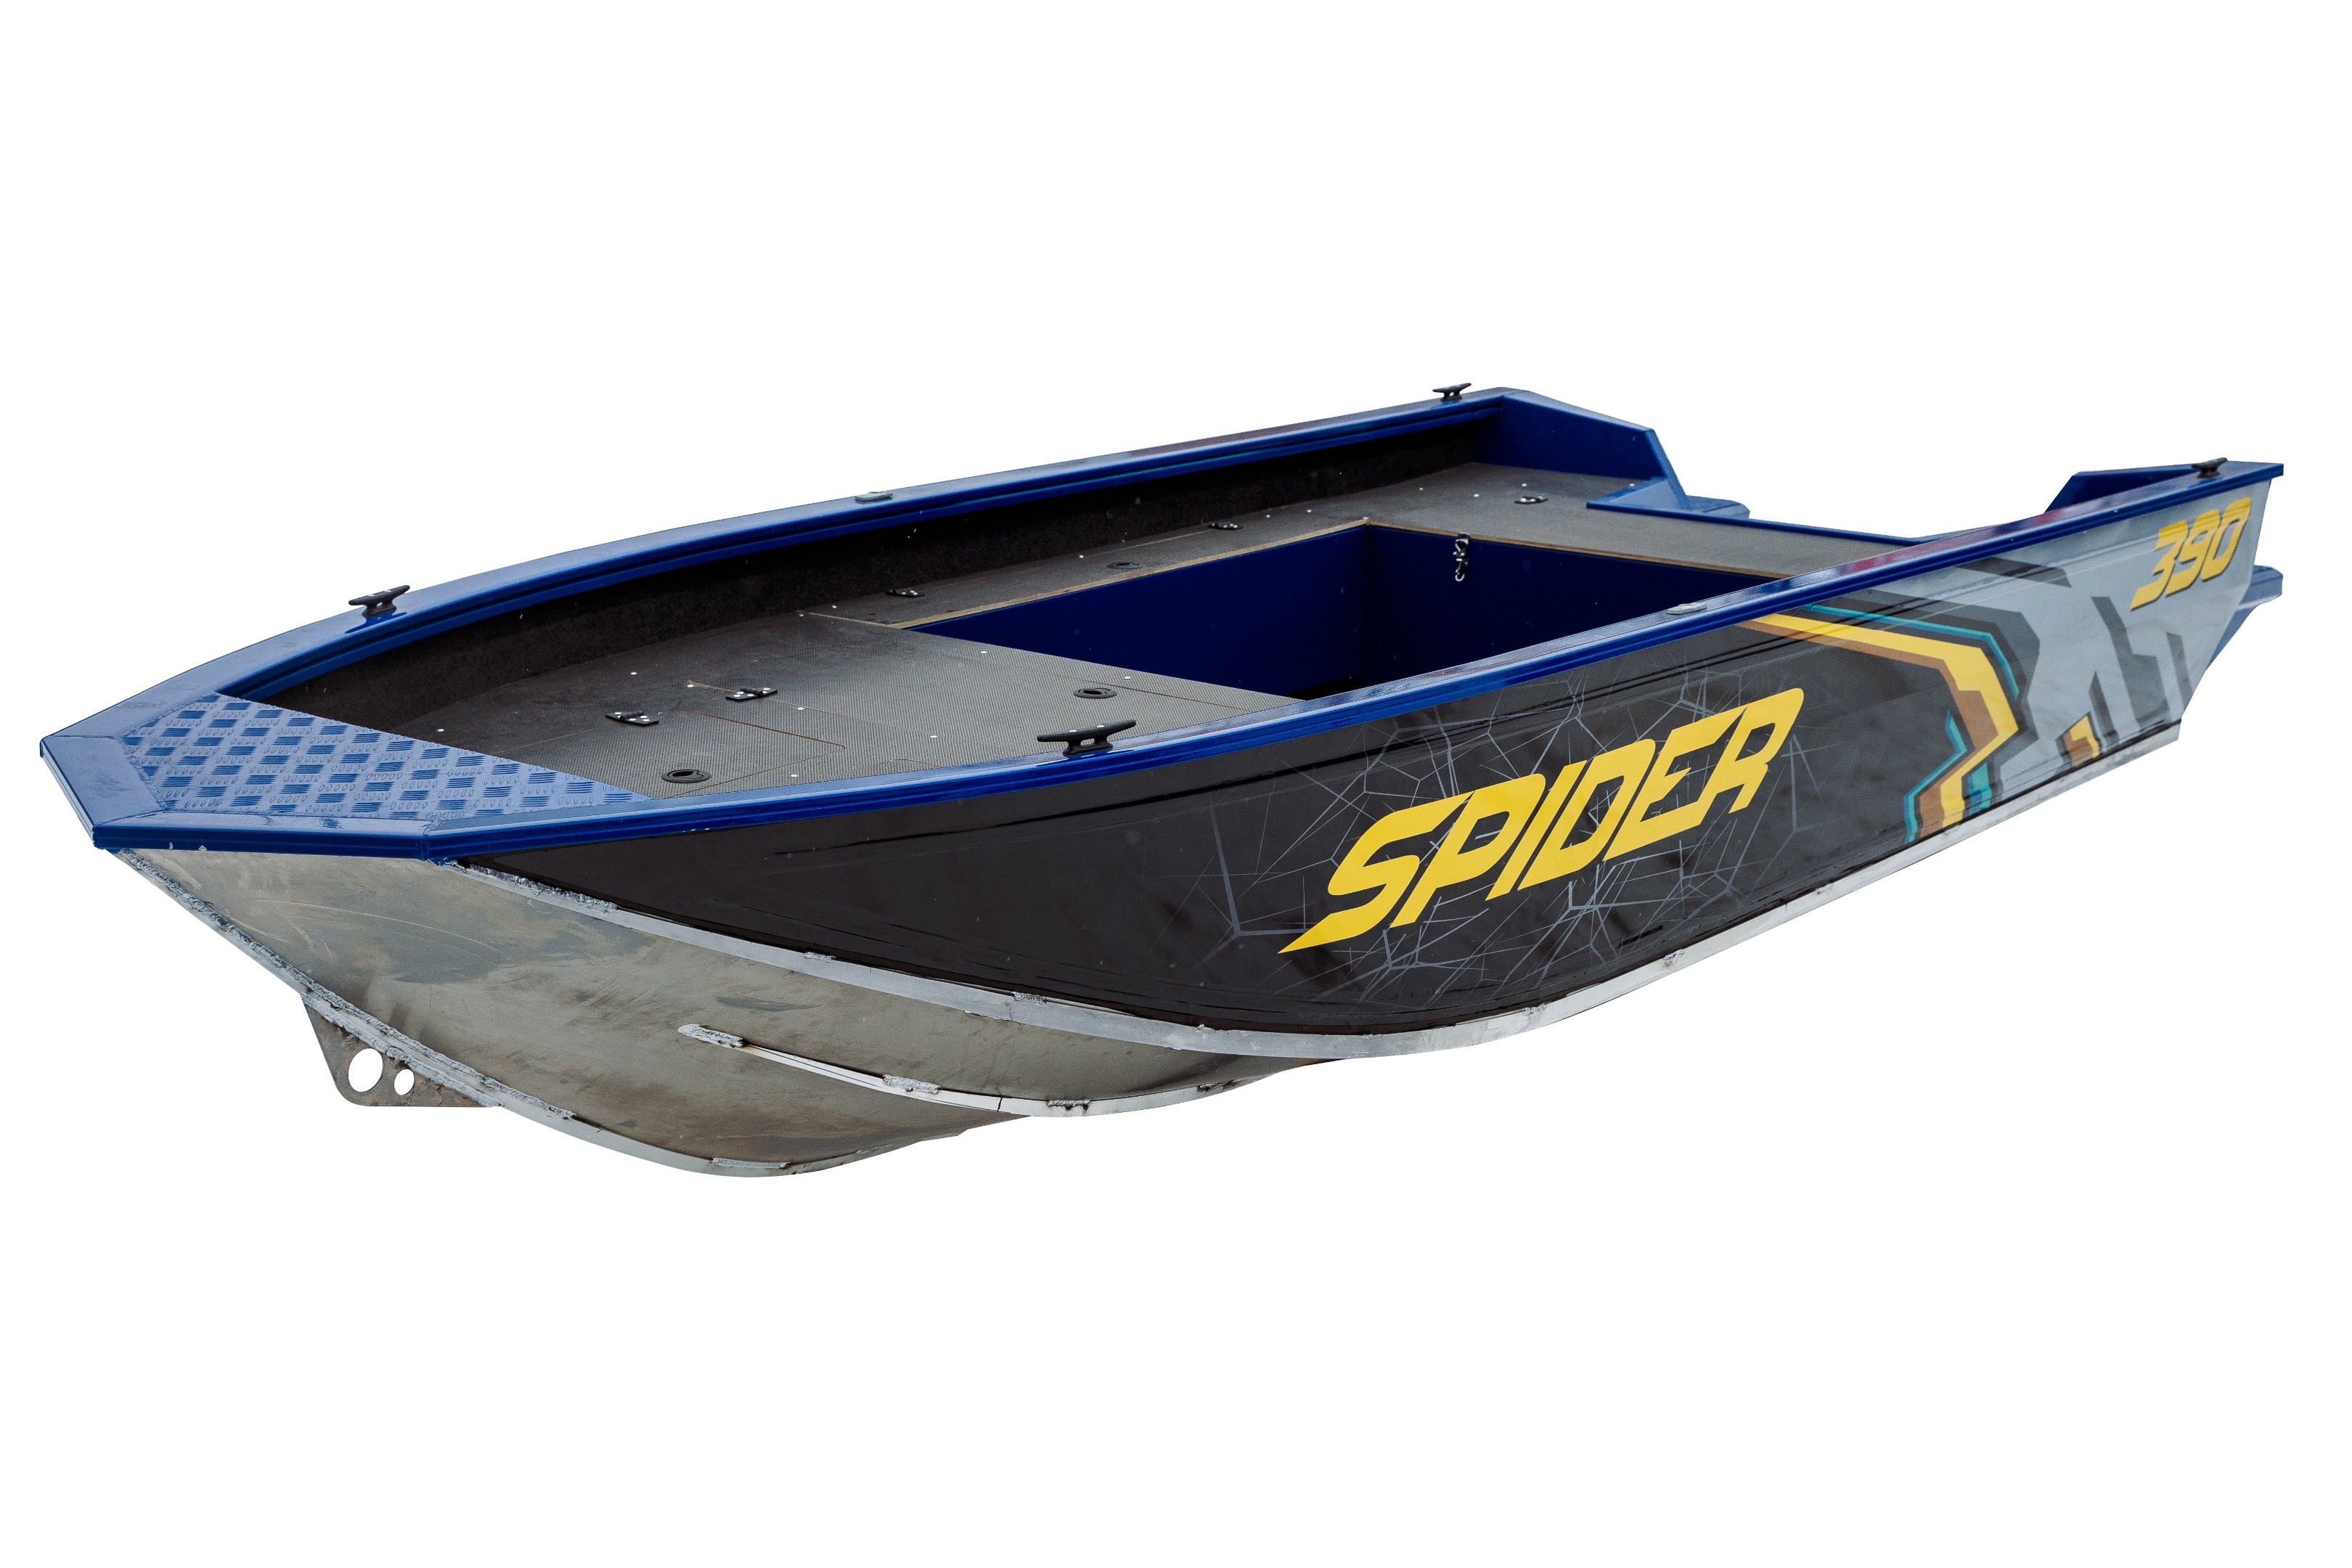 Spider 390 Легкая, вместительная лодка с фишплатформой.